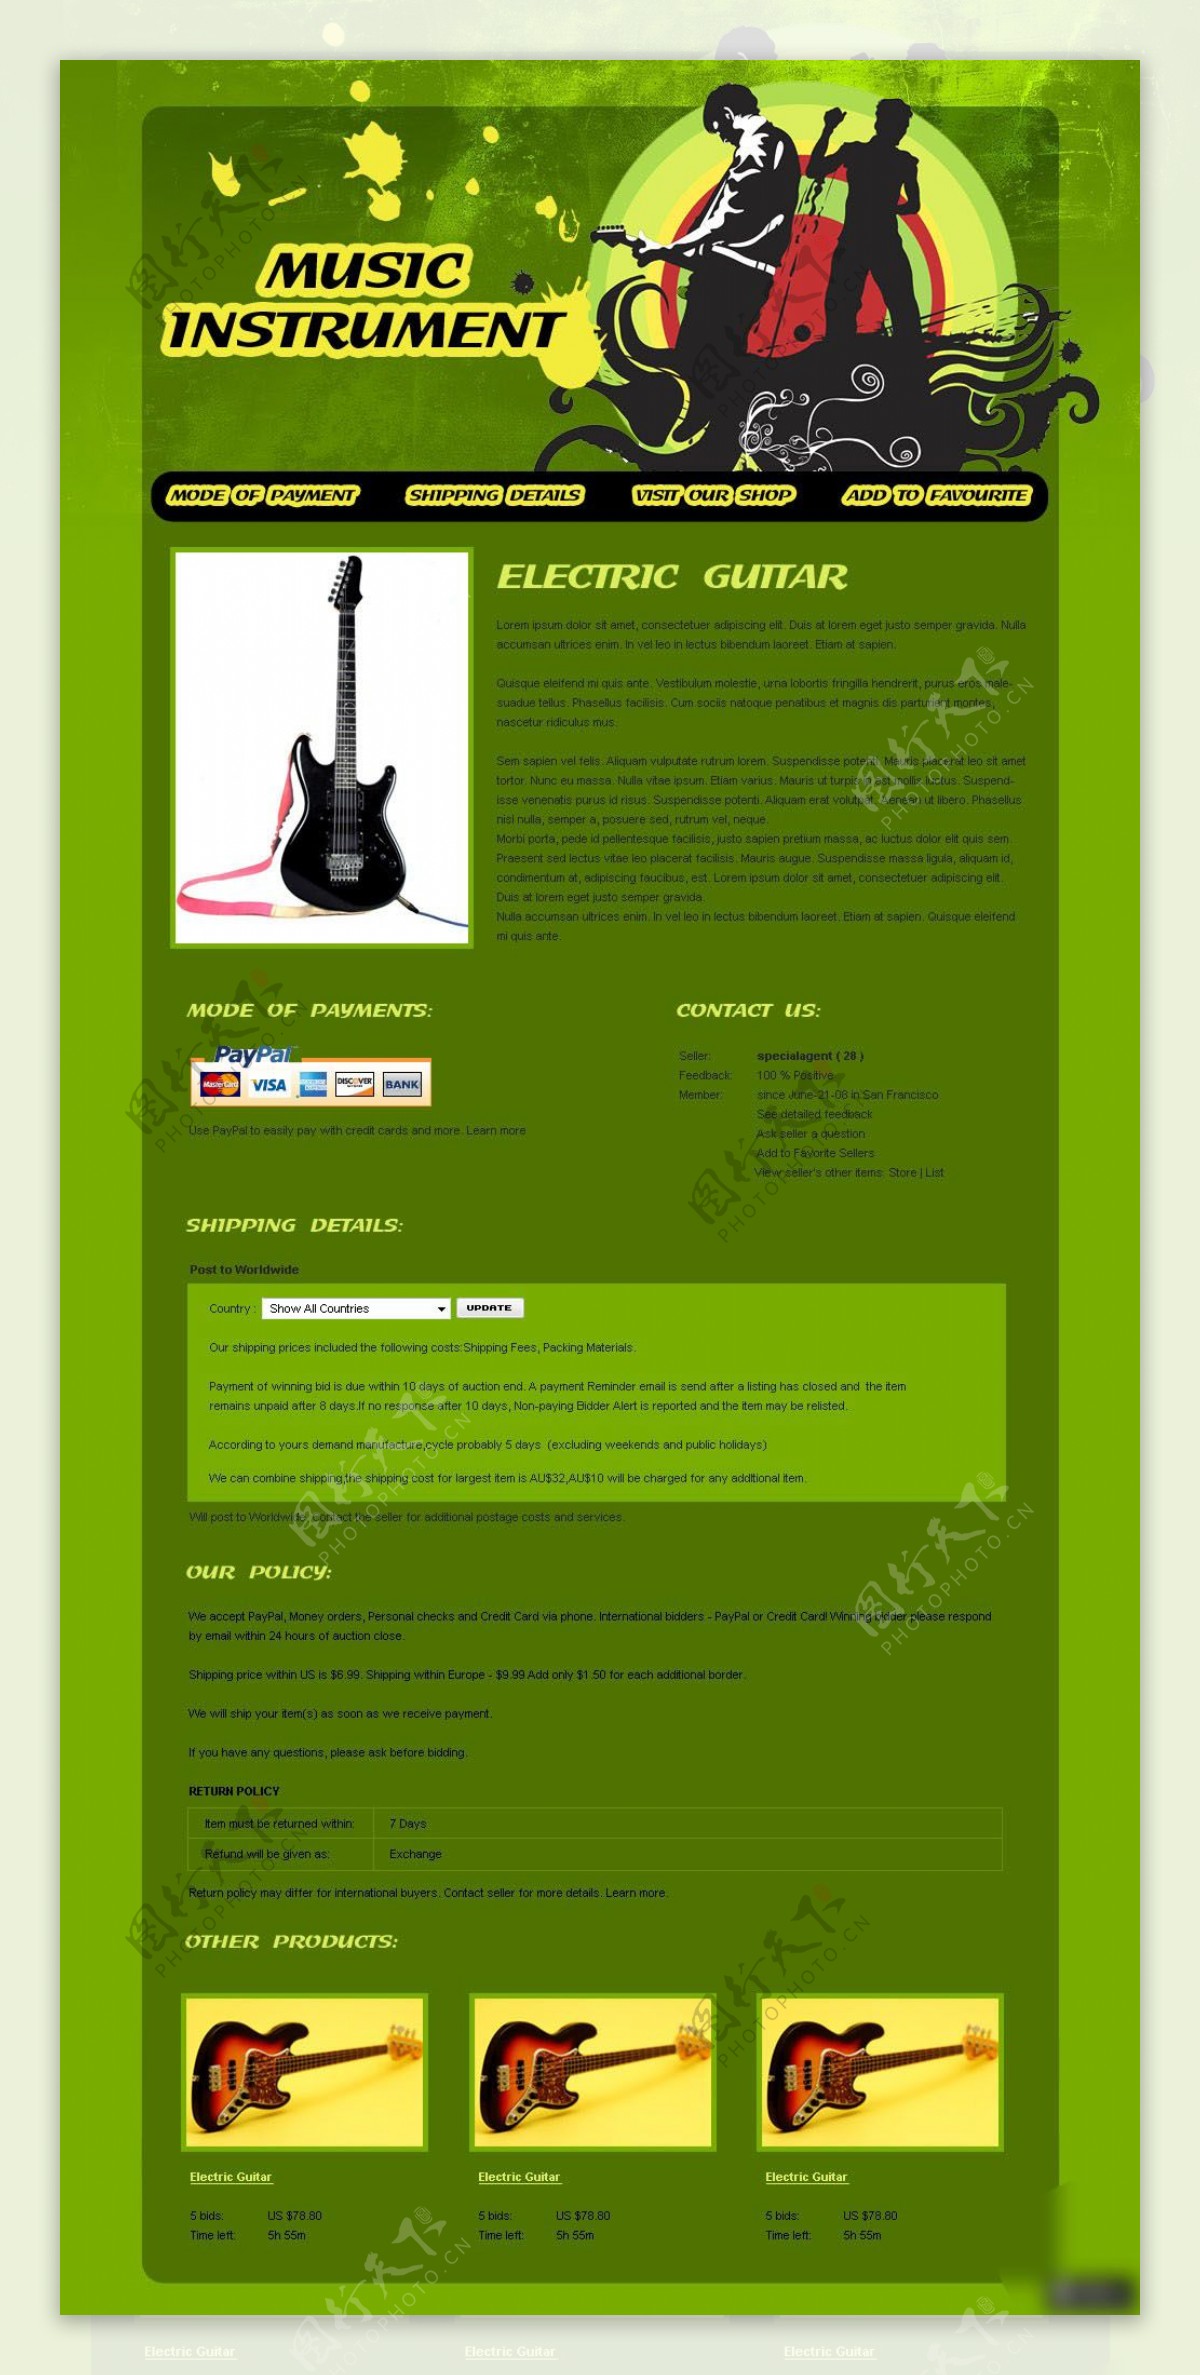 乐器吉他展示网页